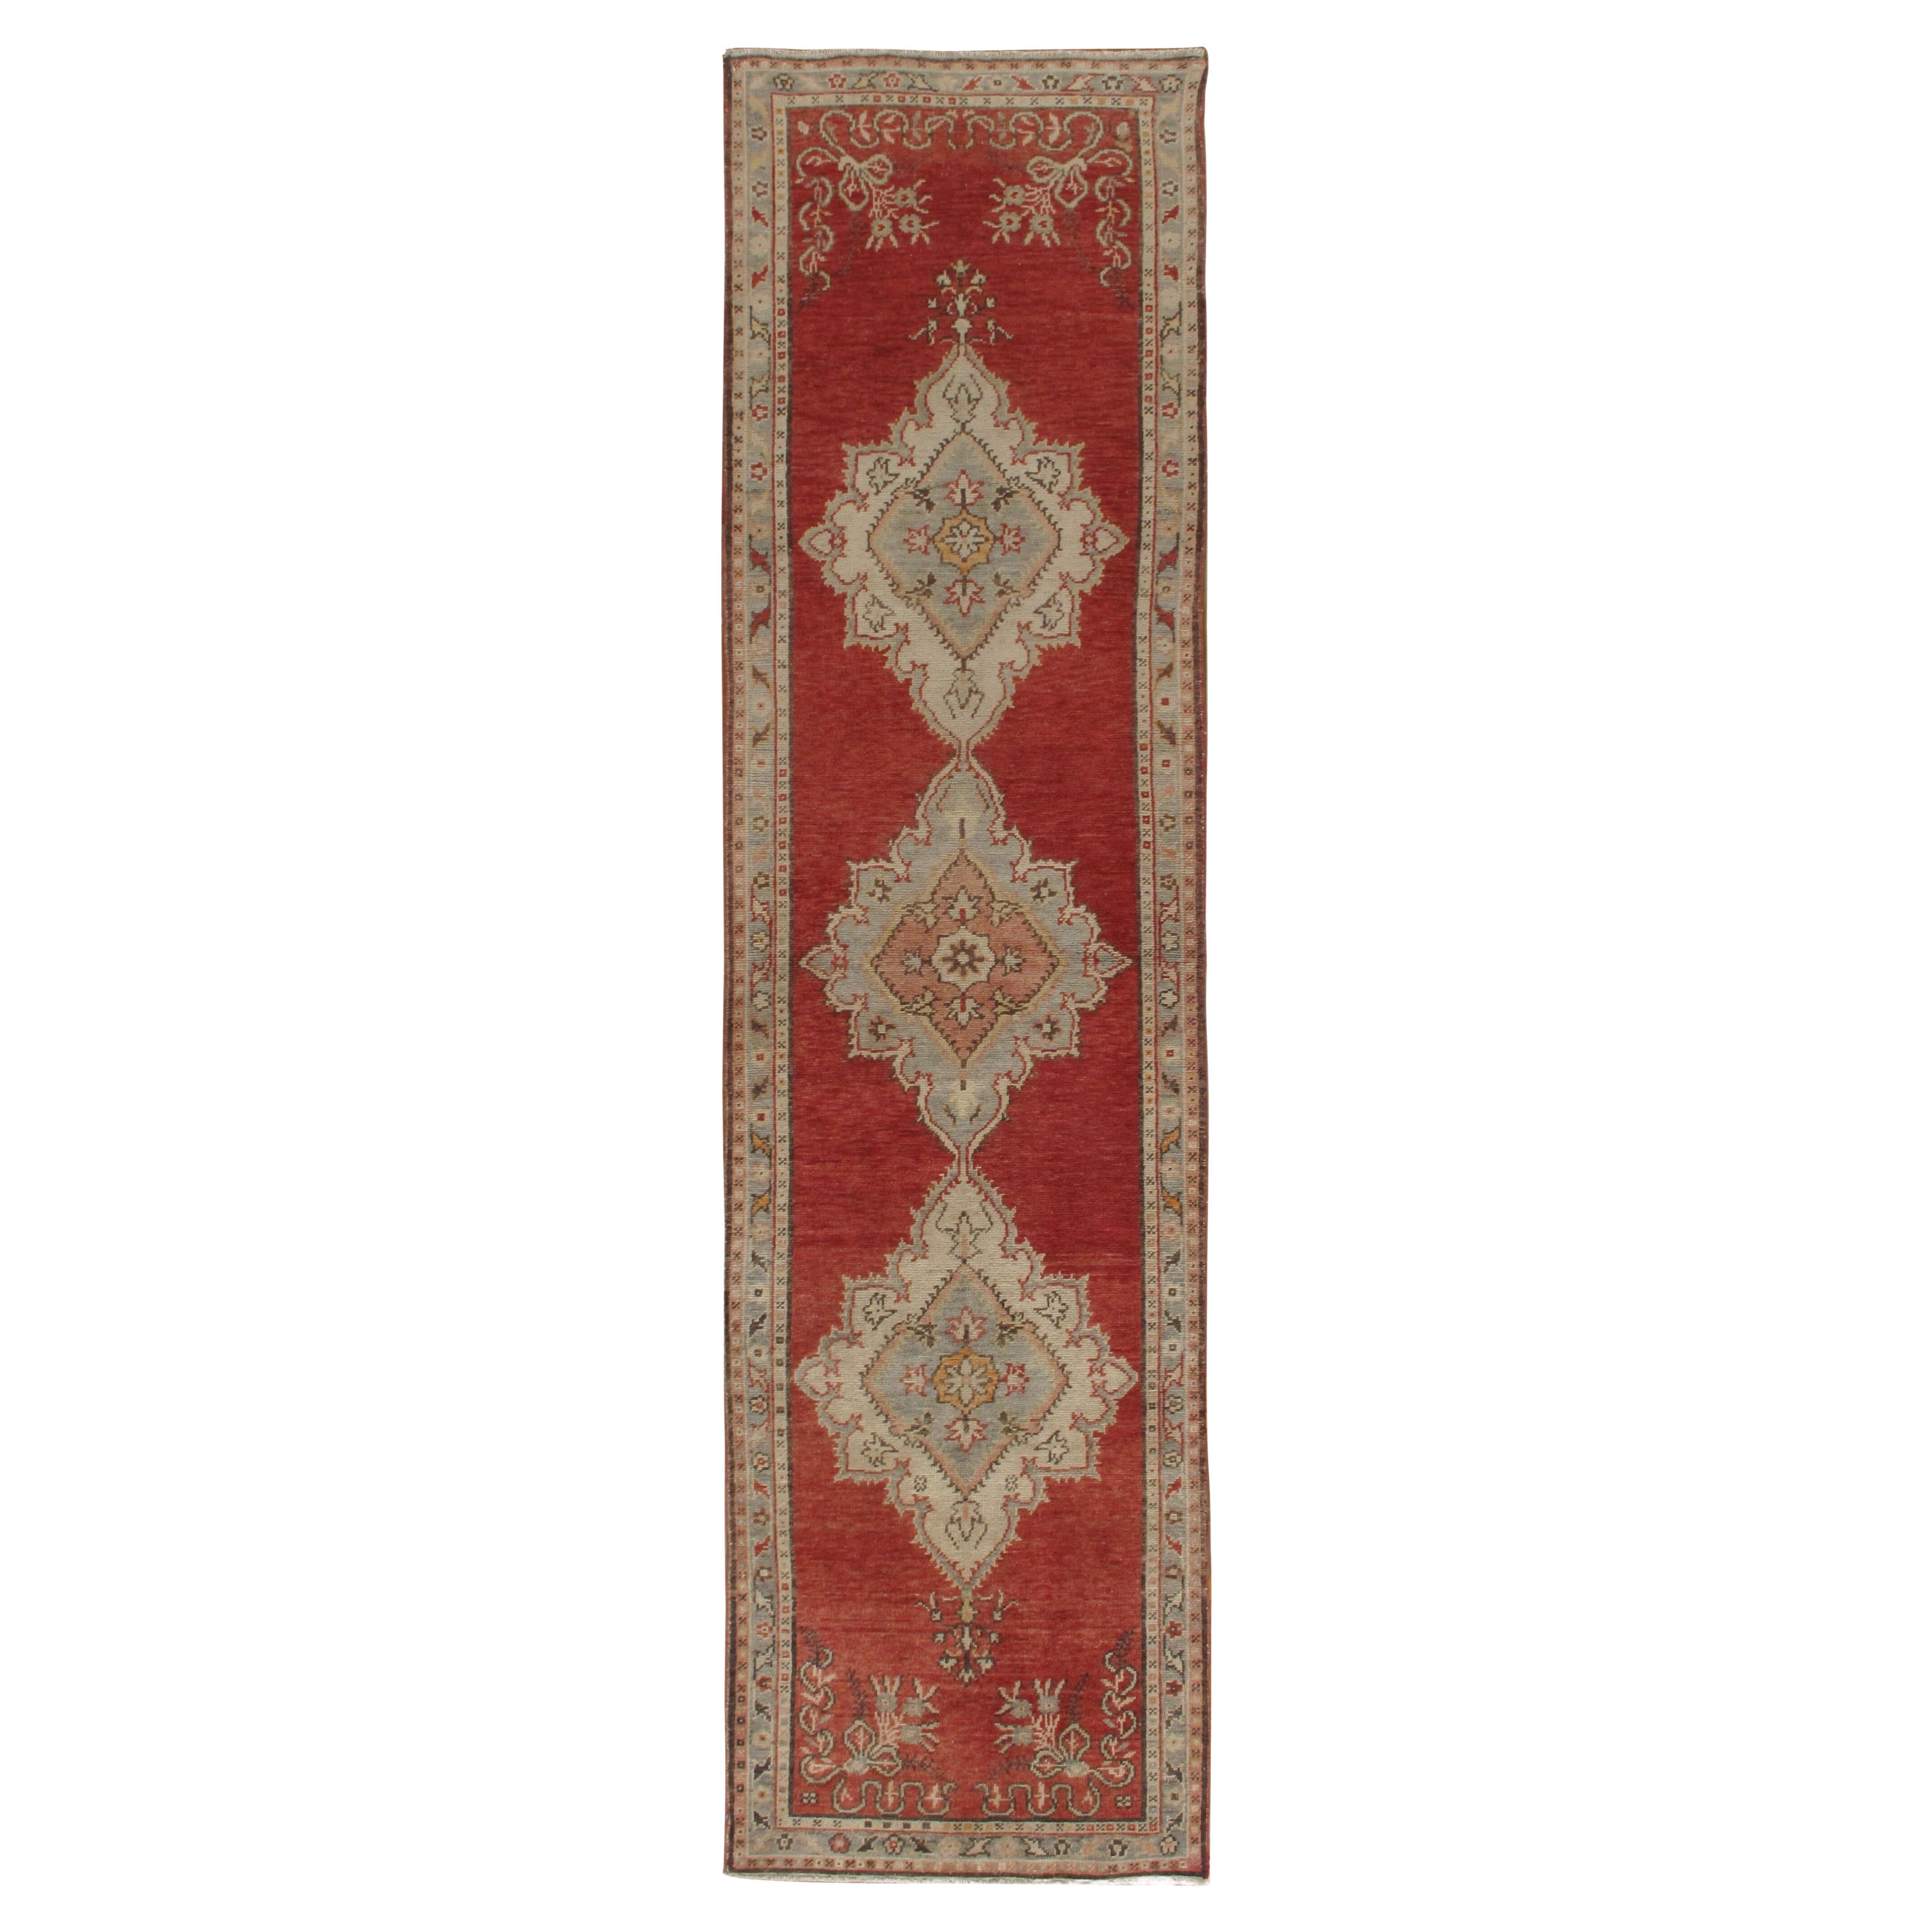 Türkischer Oushak-Teppich-Läufer im Vintage-Stil, 2'9 x 10'9 cm